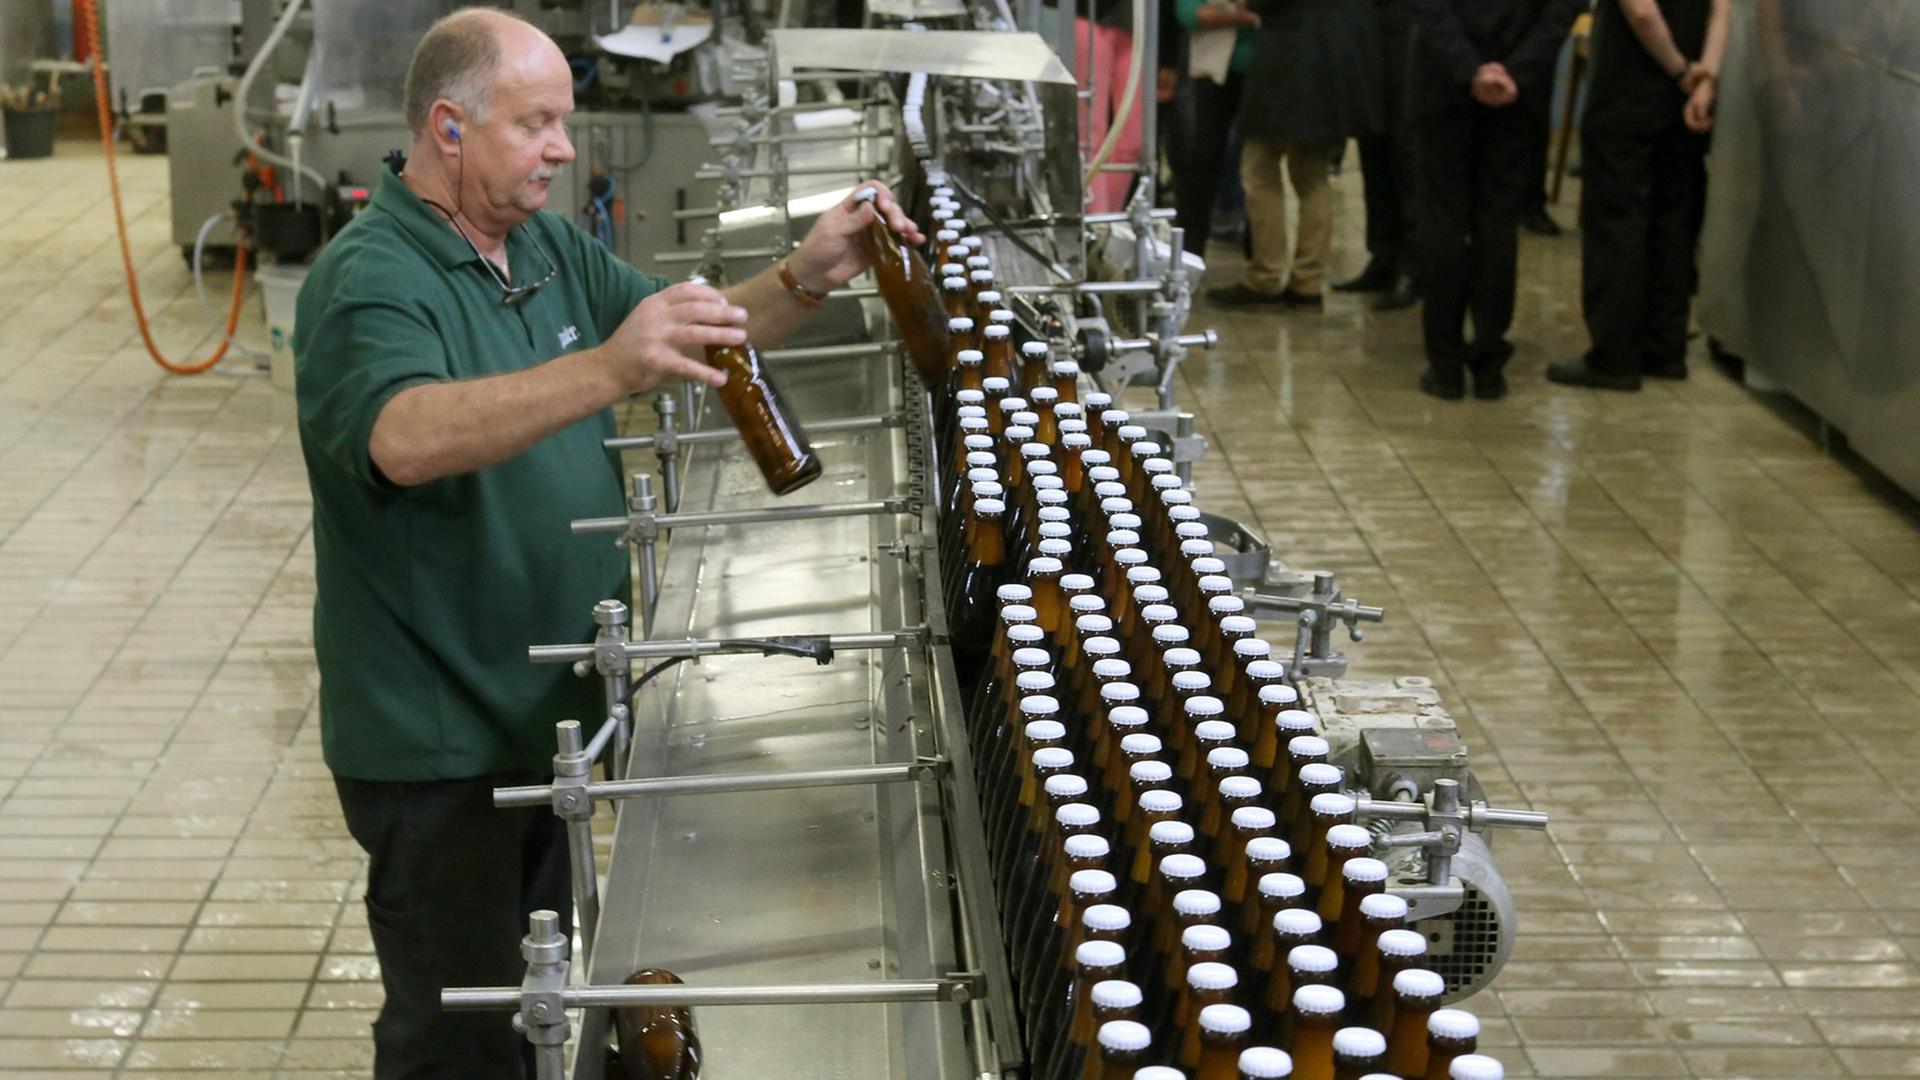 Bierflaschen der Brauerei Stauder laufen über ein Fließband beim Essener Kleberhersteller CPH. Das Unternehmen forscht nach dem richtigen Klebstoff für die Etiketten.